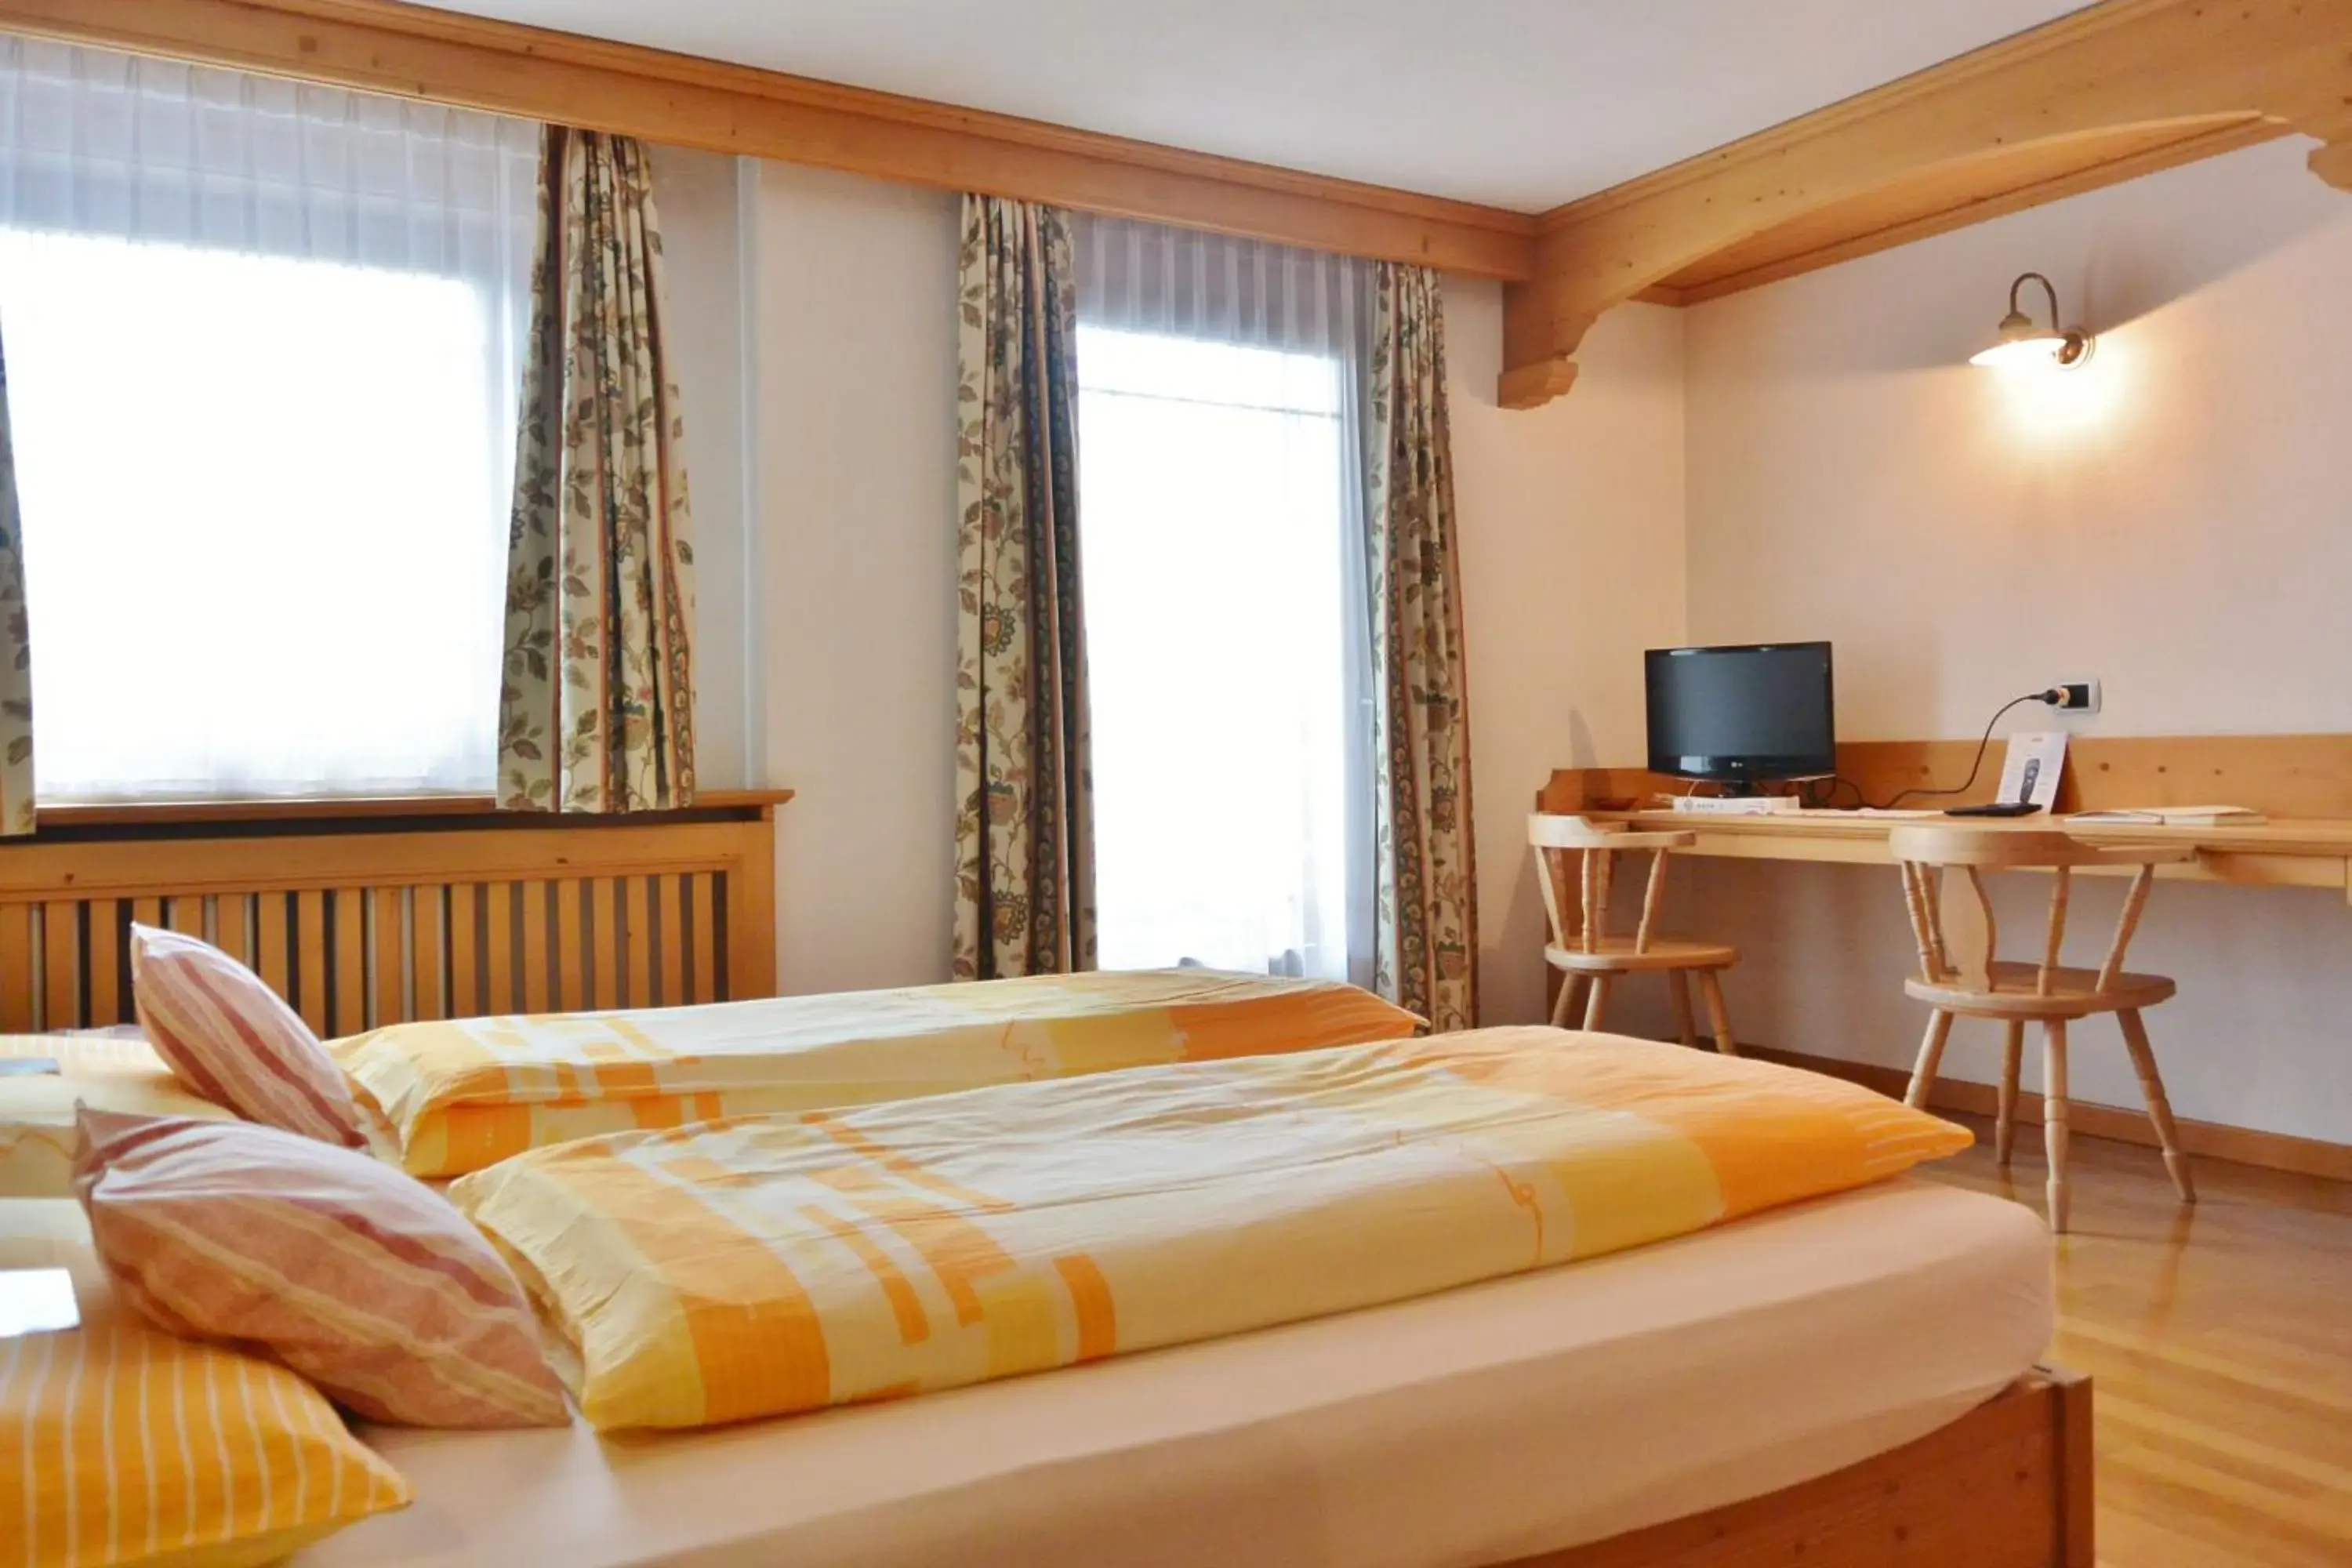 Bed, Room Photo in Hotel Garnì al Plan